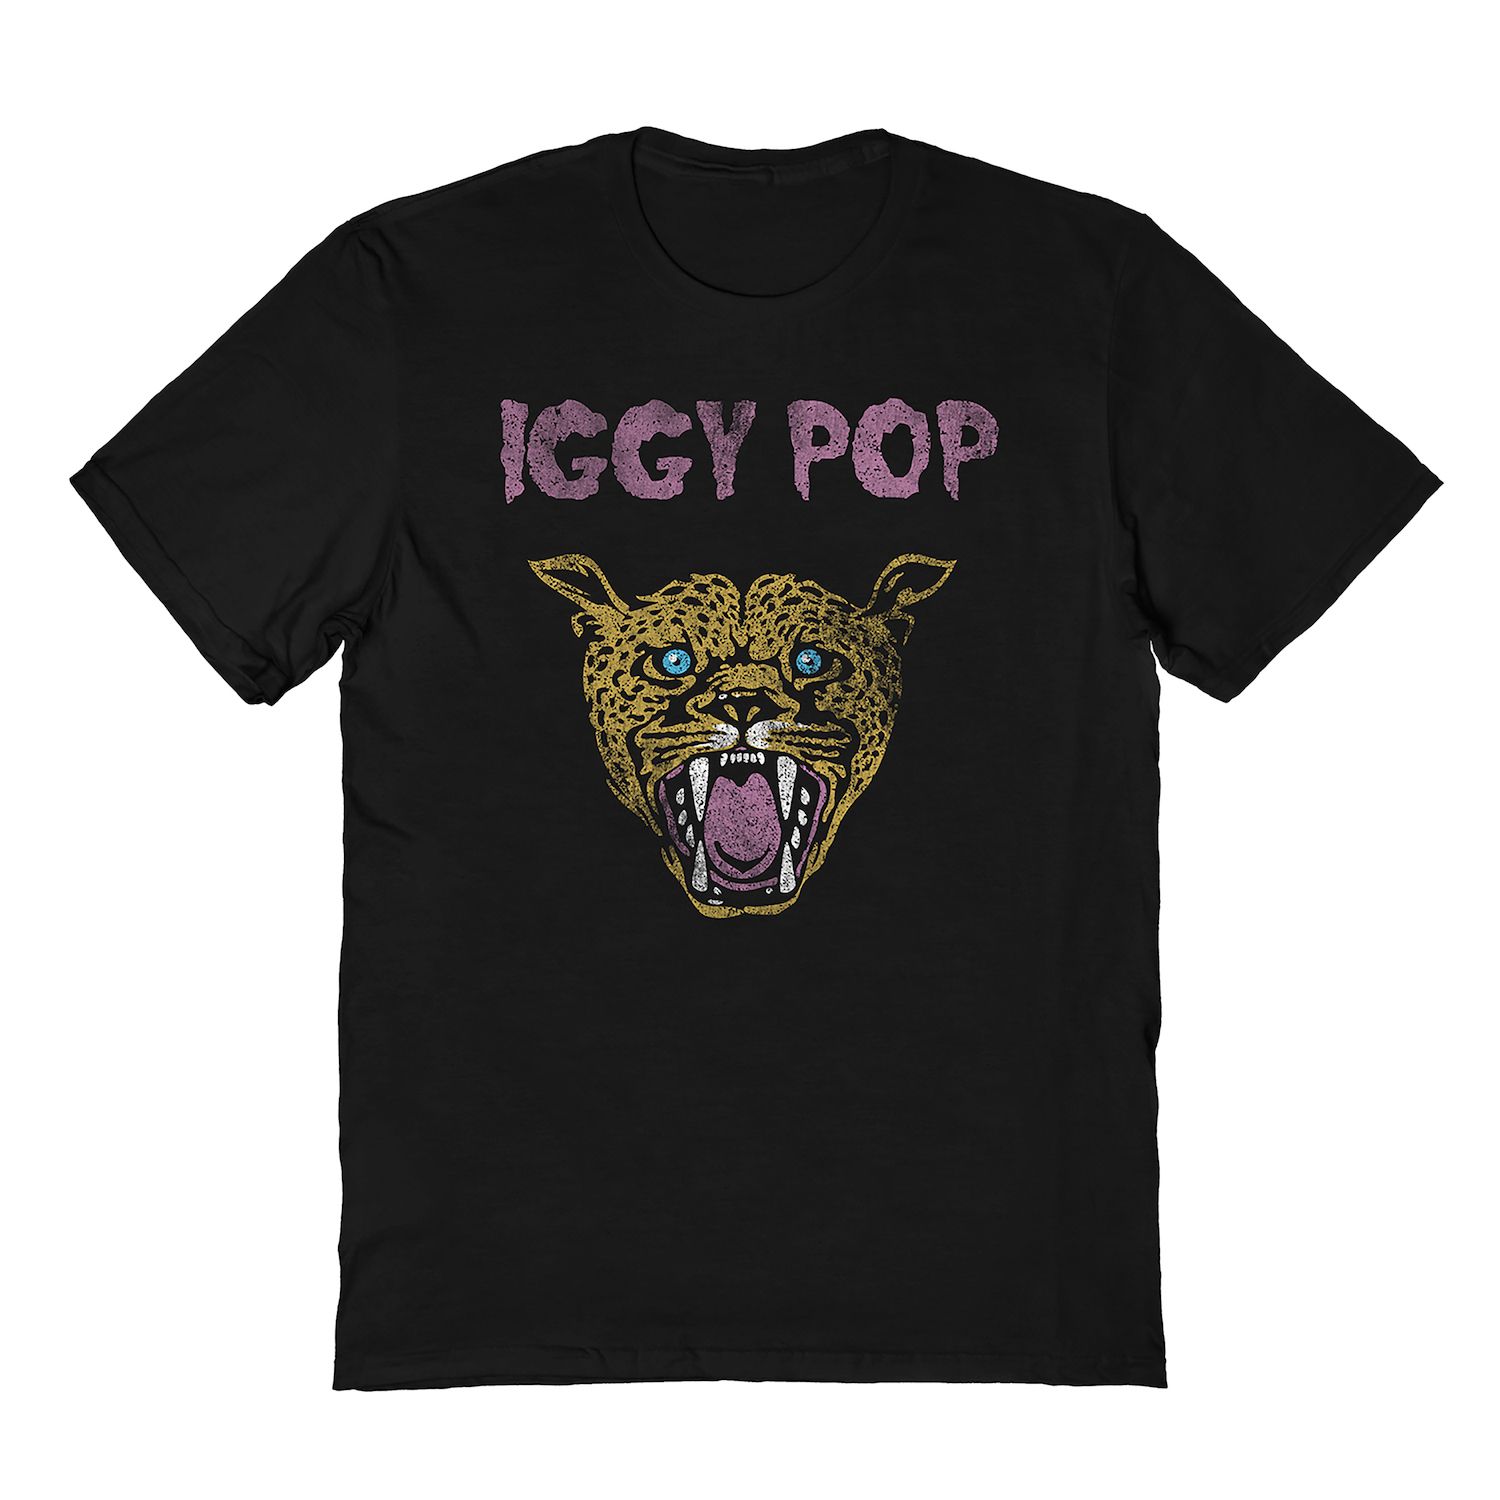 мужская футболка с принтом хипстерская футболка iggy and the stooges iggy pop черная мужская футболка с принтом гаража панк рок куклы нью йорка Мужская футболка Iggy Pop Licensed Character